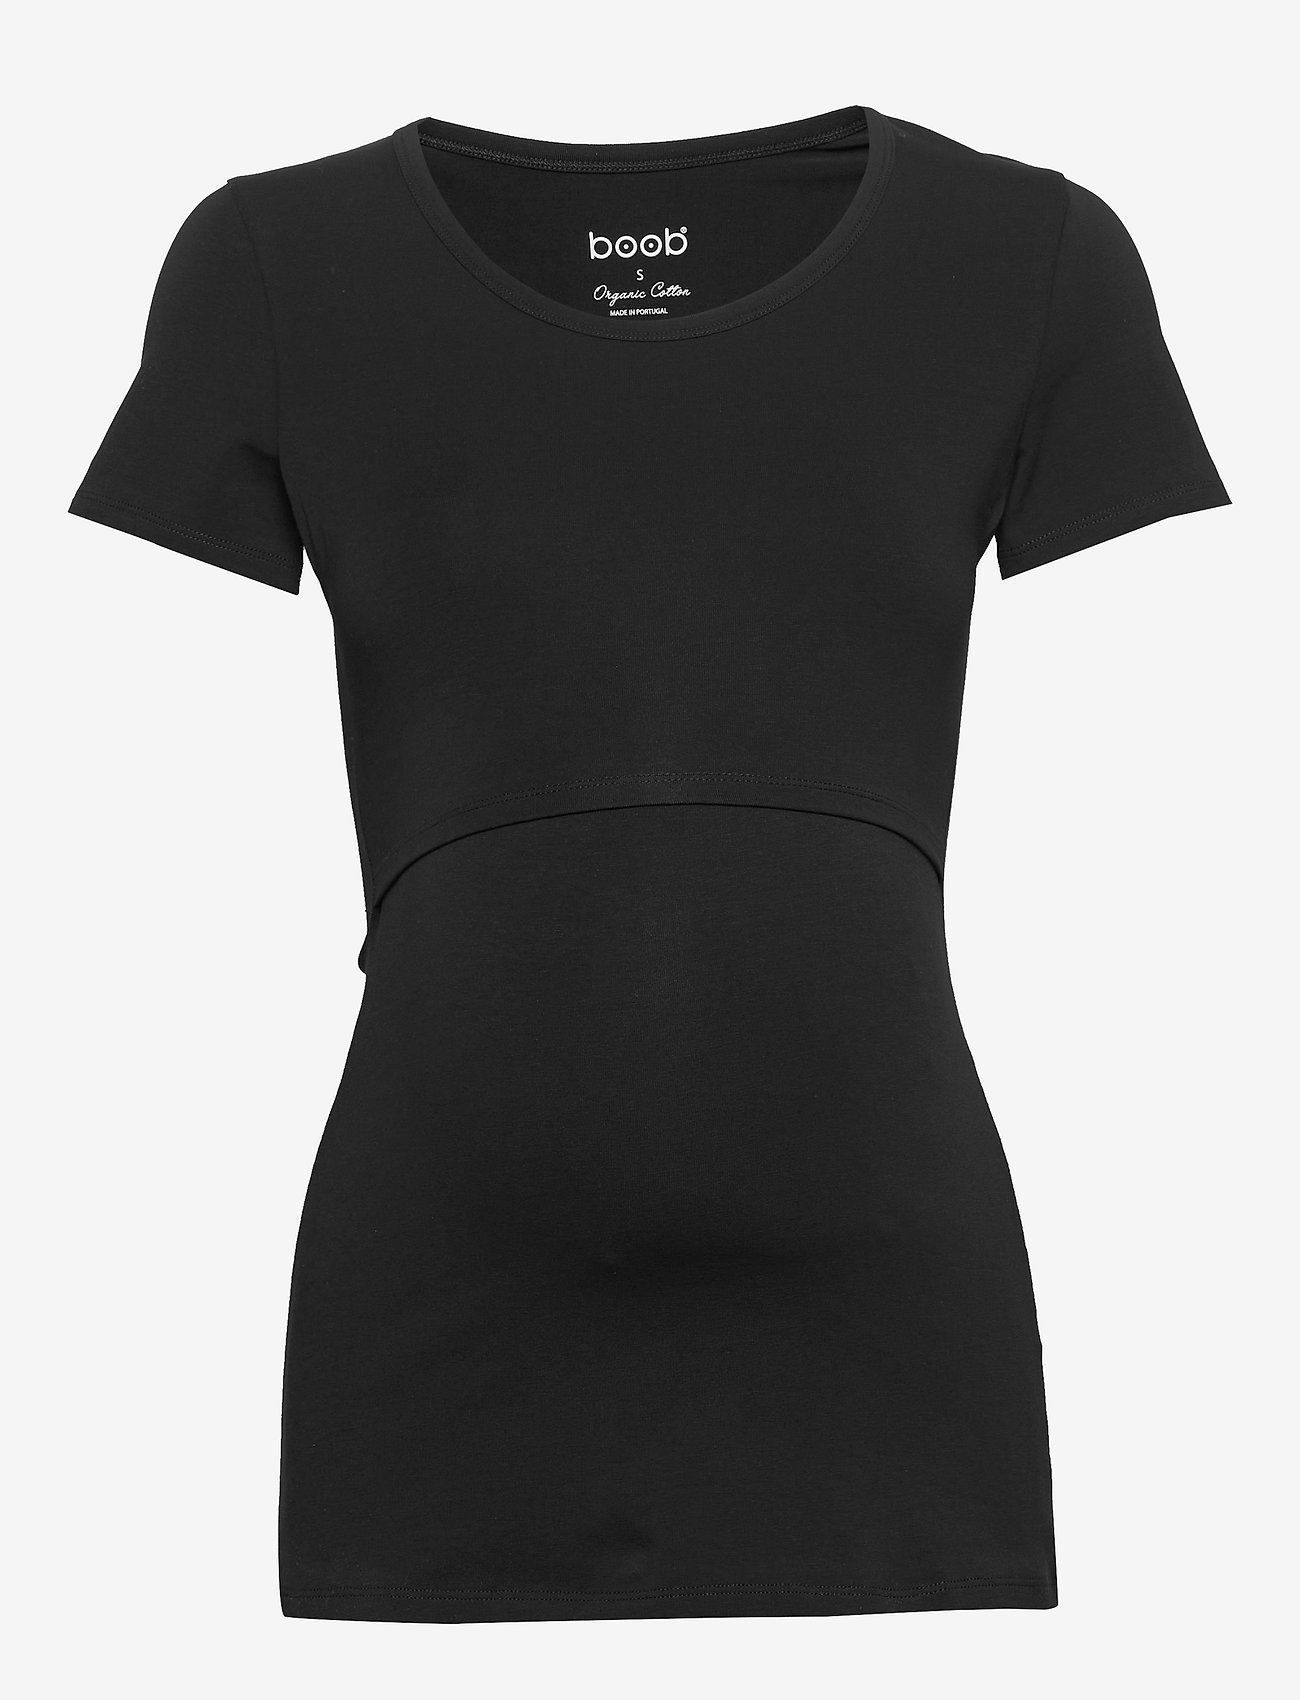 Boob - Classic s/s top - t-shirts & tops - black - 0